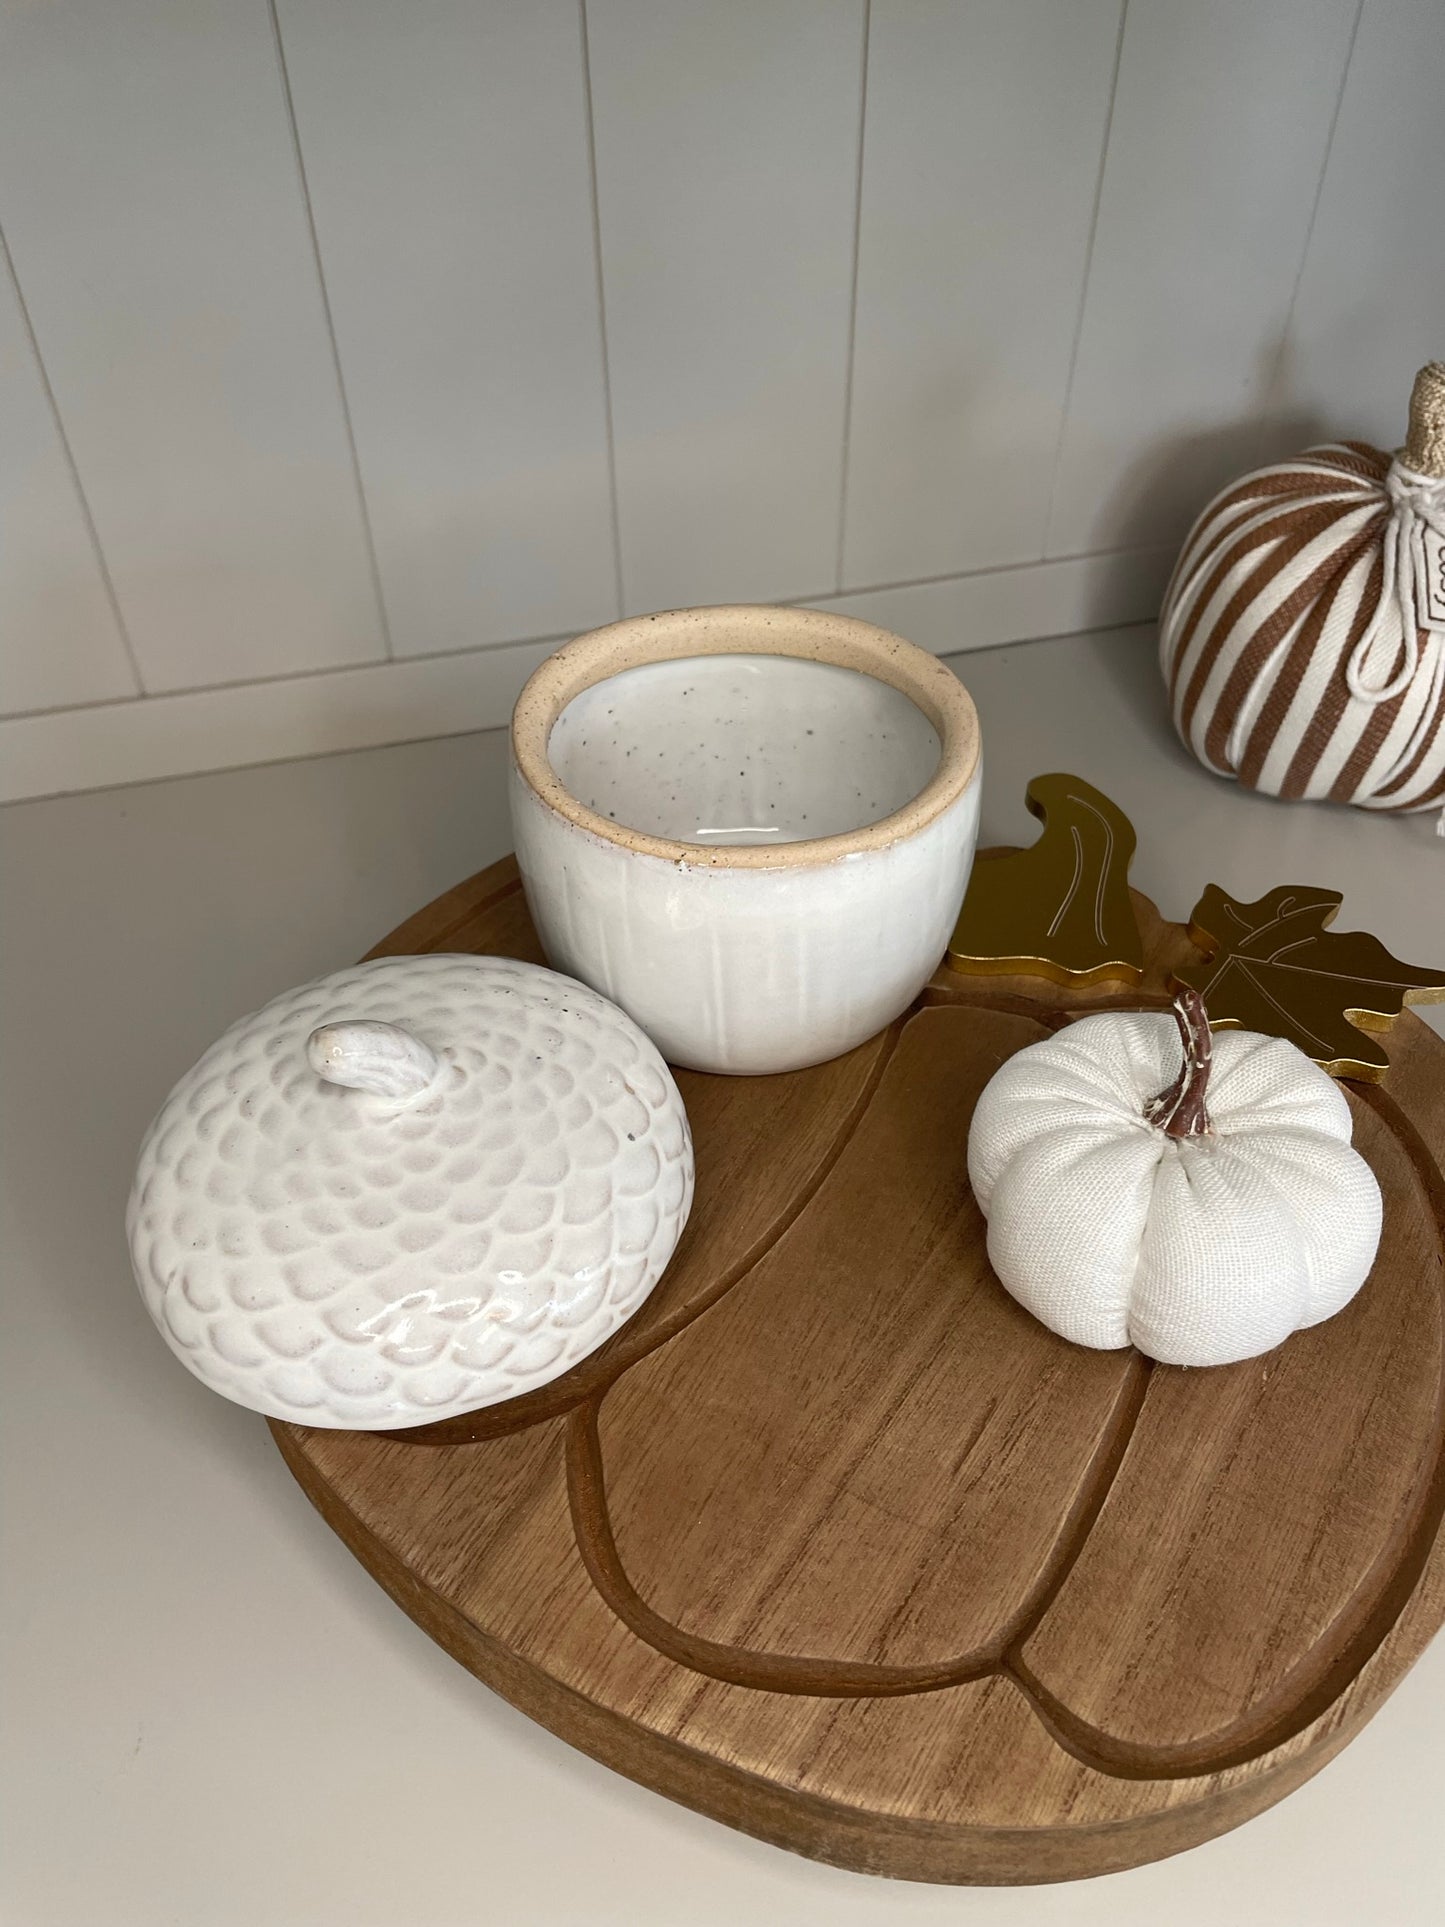 Ceramic Acorn Pot